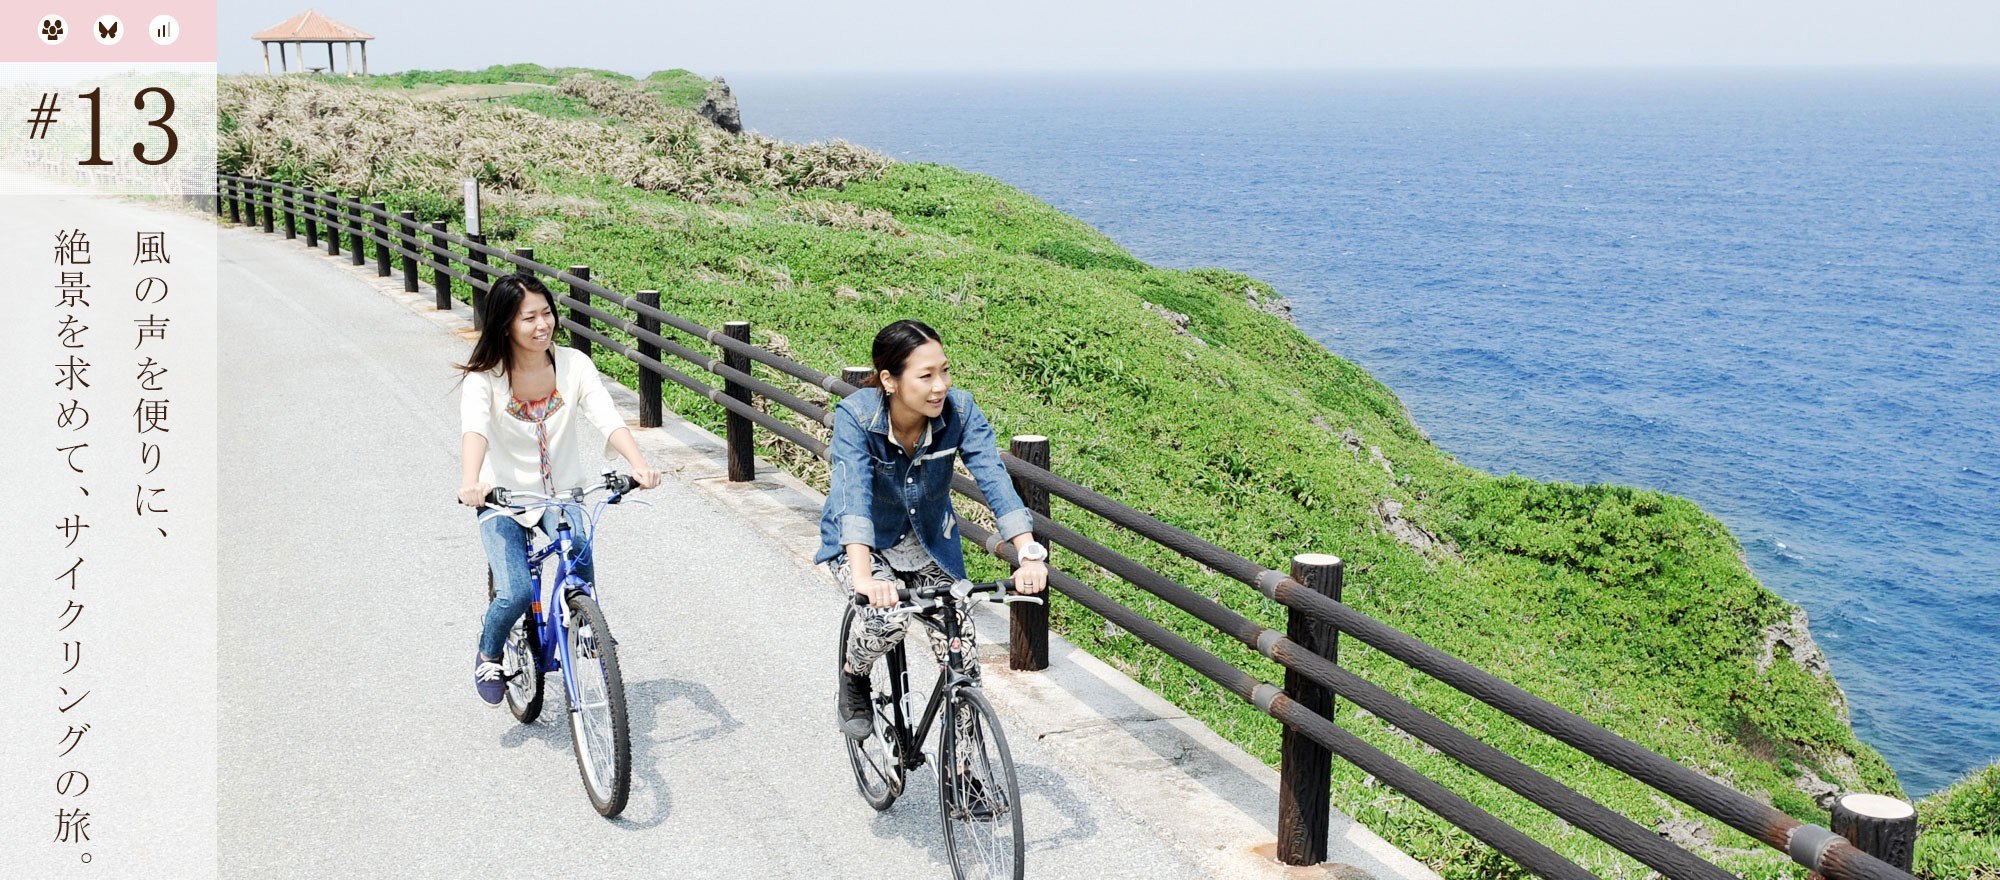 宮古島観光-伊良部島観光はバス・レンタカーの他にサイクリングがおすすめの理由